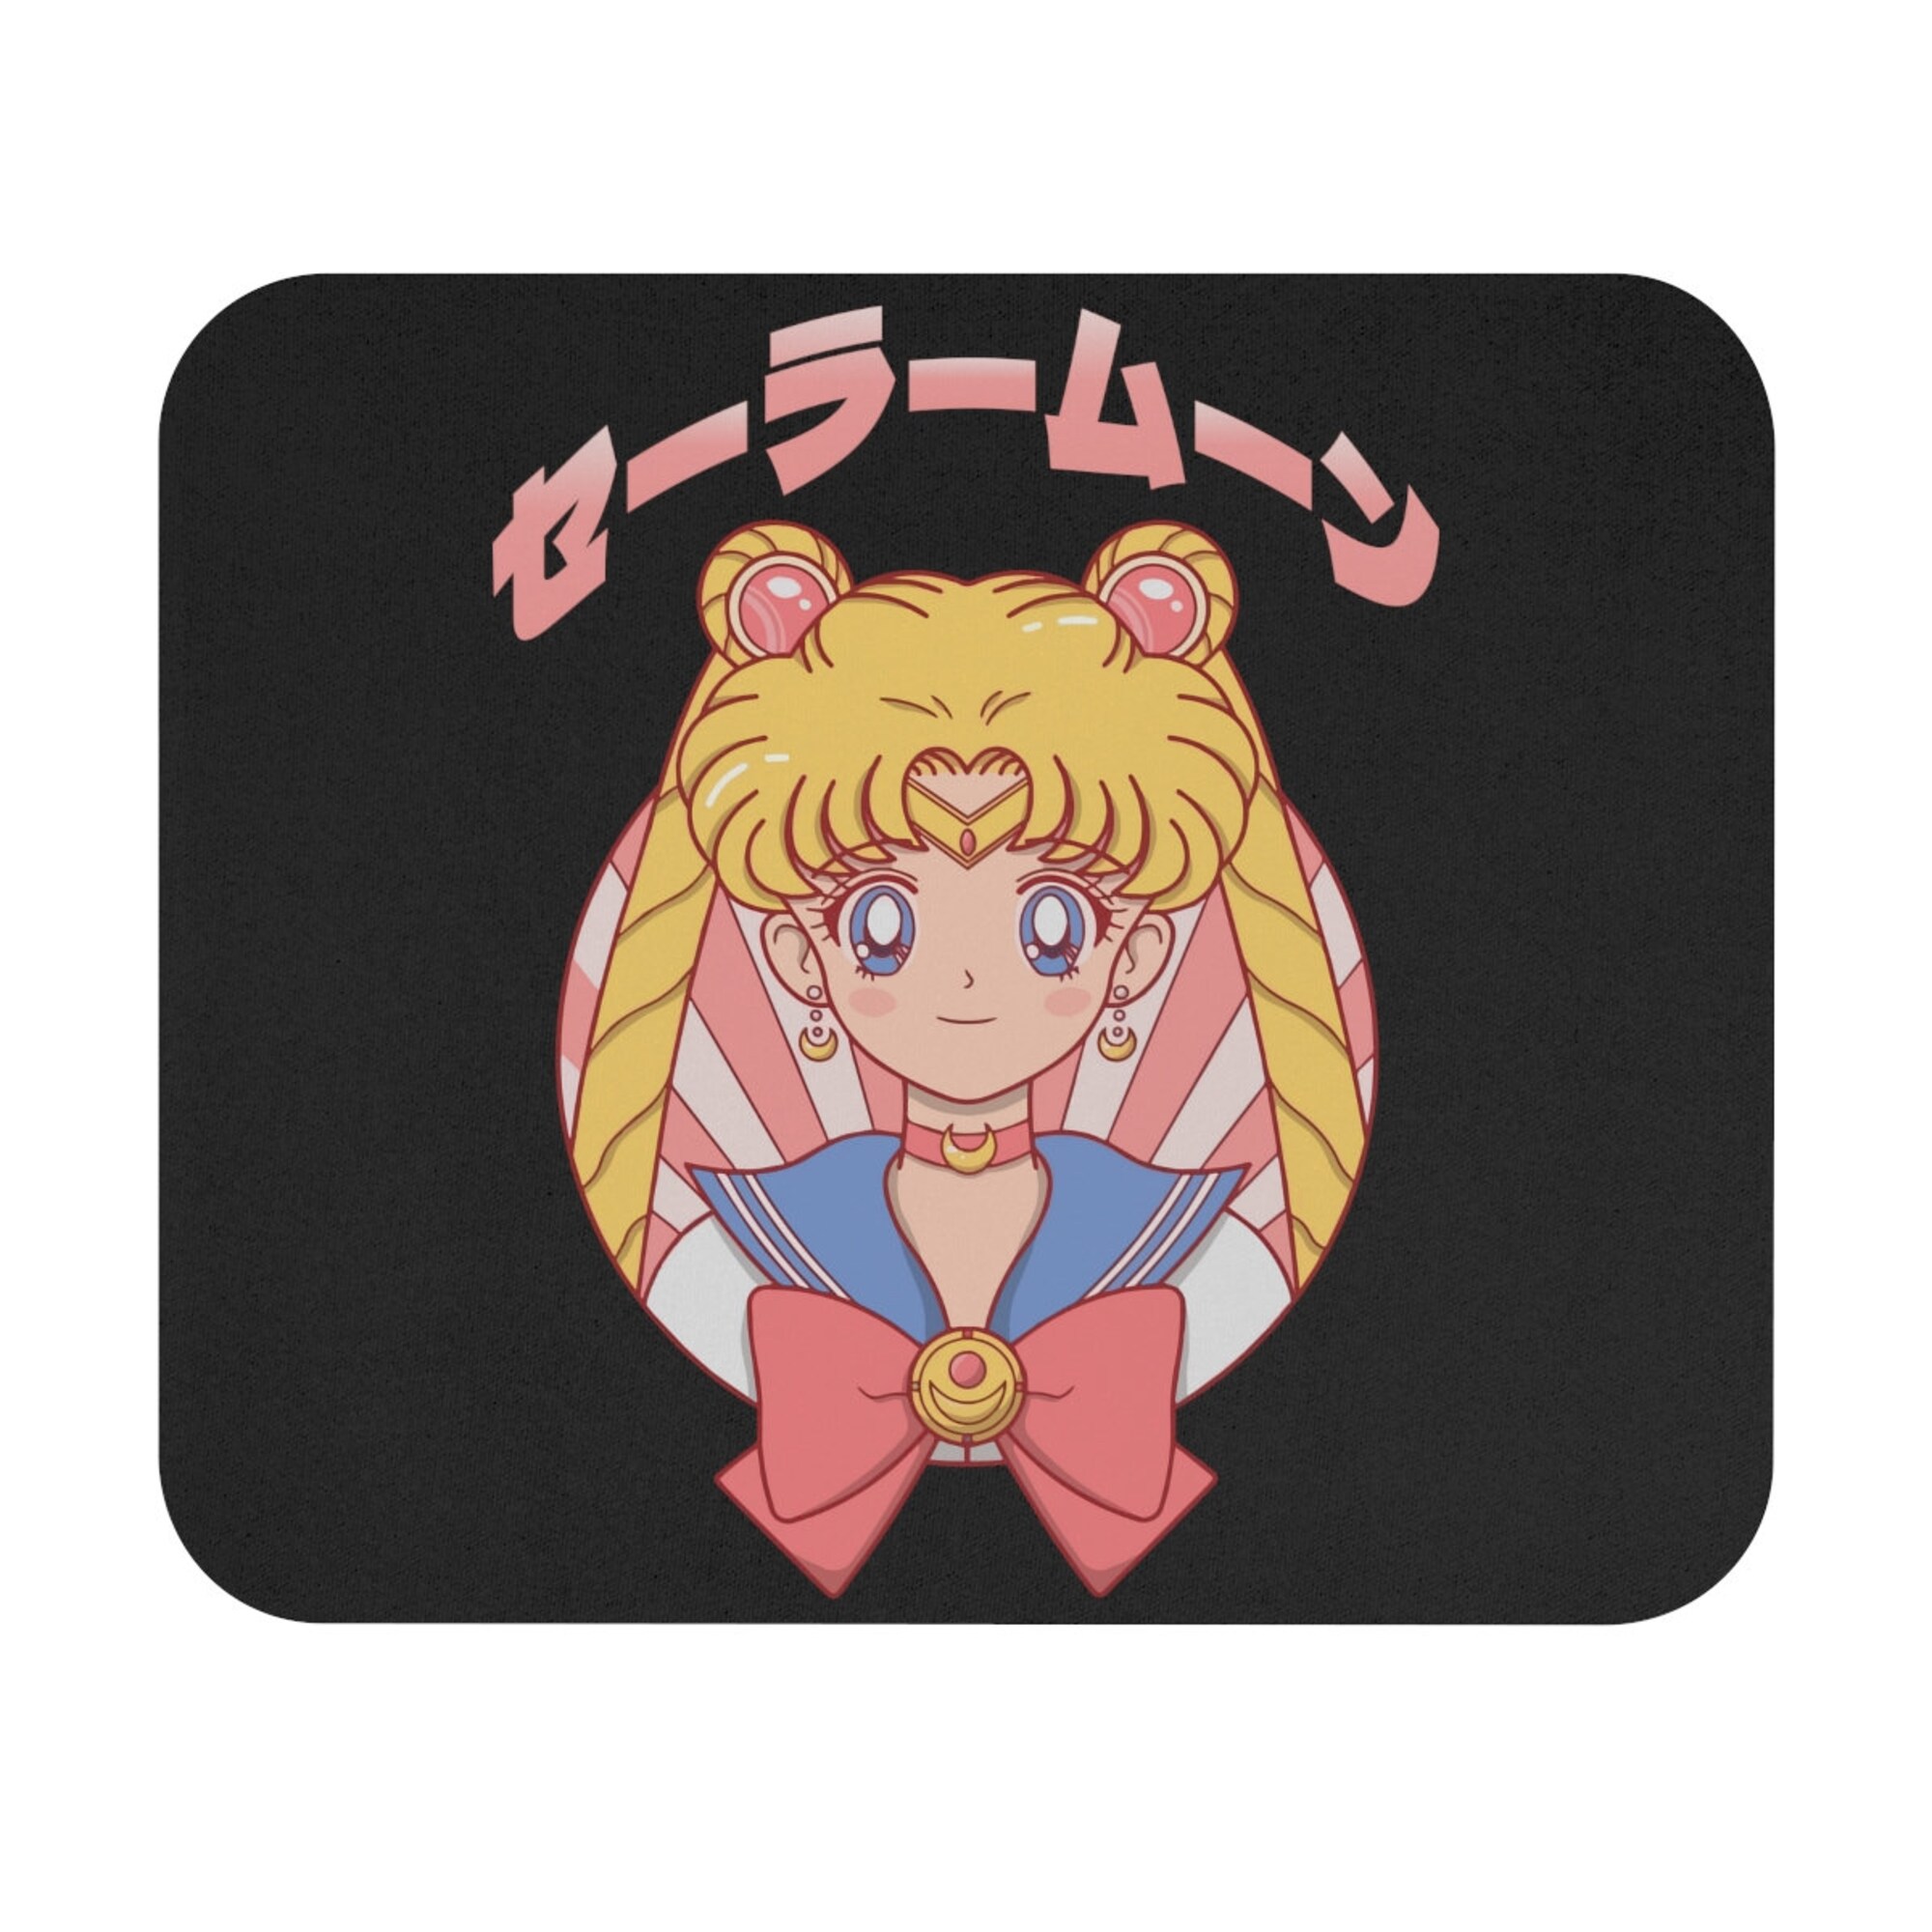 Super Sailor Moon Mouse Pad -sailor moon mouse pad, sailor moon mouse mat